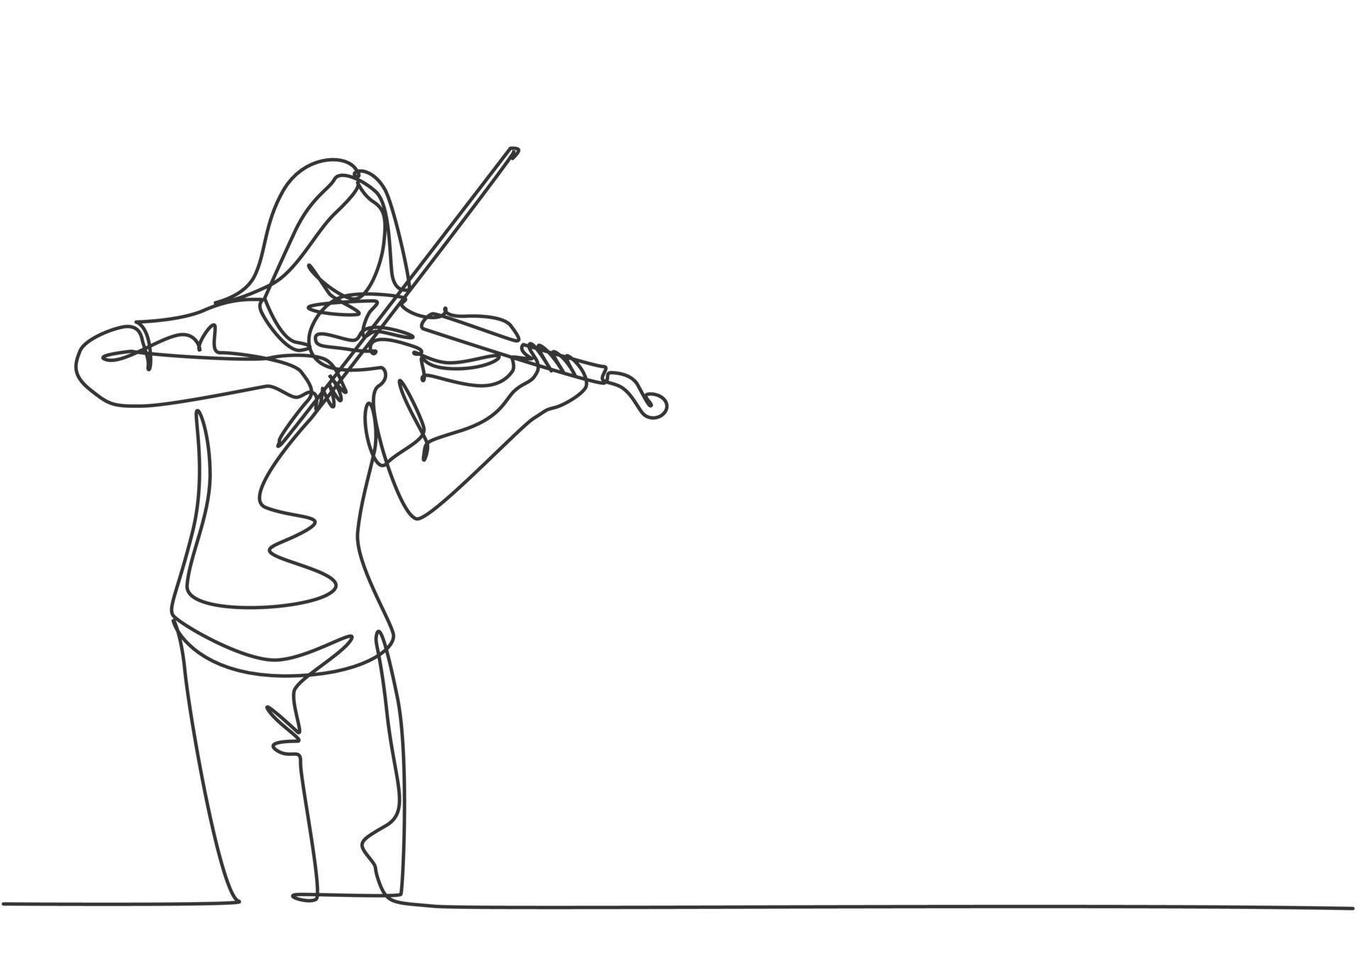 een doorlopende lijntekening van een jonge gelukkige vrouwelijke violist die viool speelt op een muziekfestivalconcert. muzikant artiest prestatie concept enkele lijn tekenen ontwerp grafische vectorillustratie vector